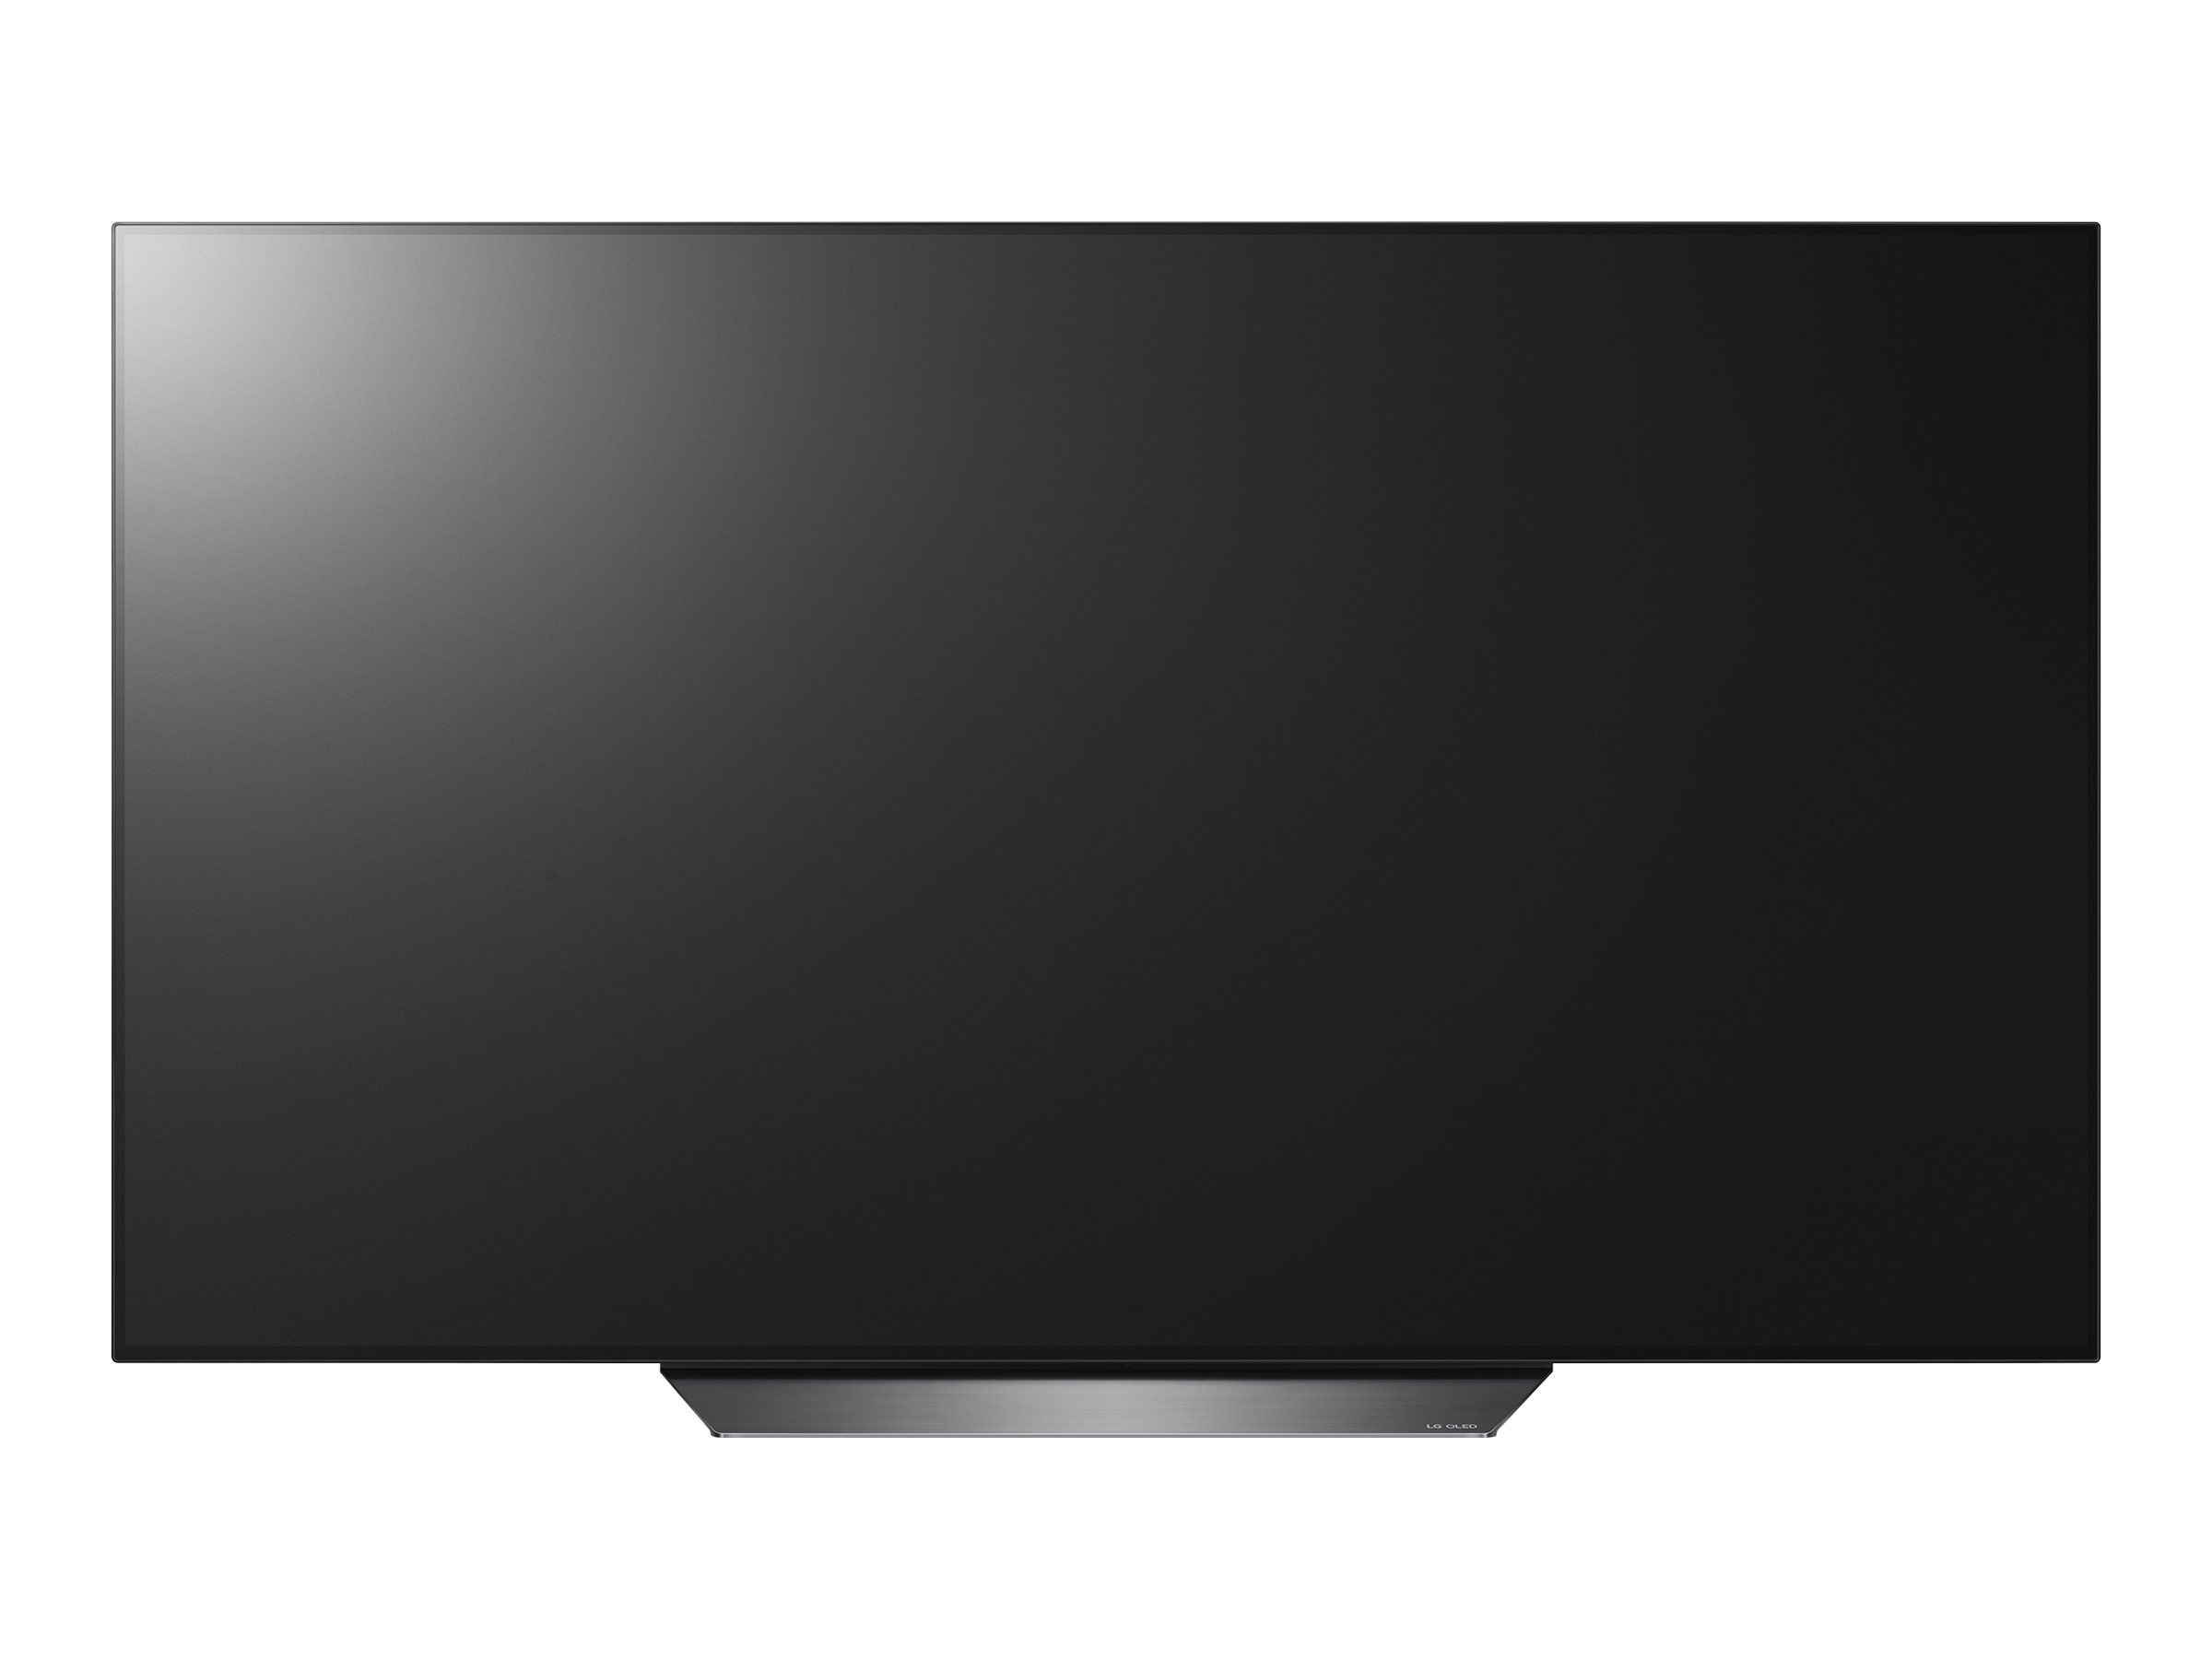 LG 65" Class OLED B8 Series 4K (2160P) Smart Ultra HD HDR TV - OLED65B8PUA - image 1 of 13